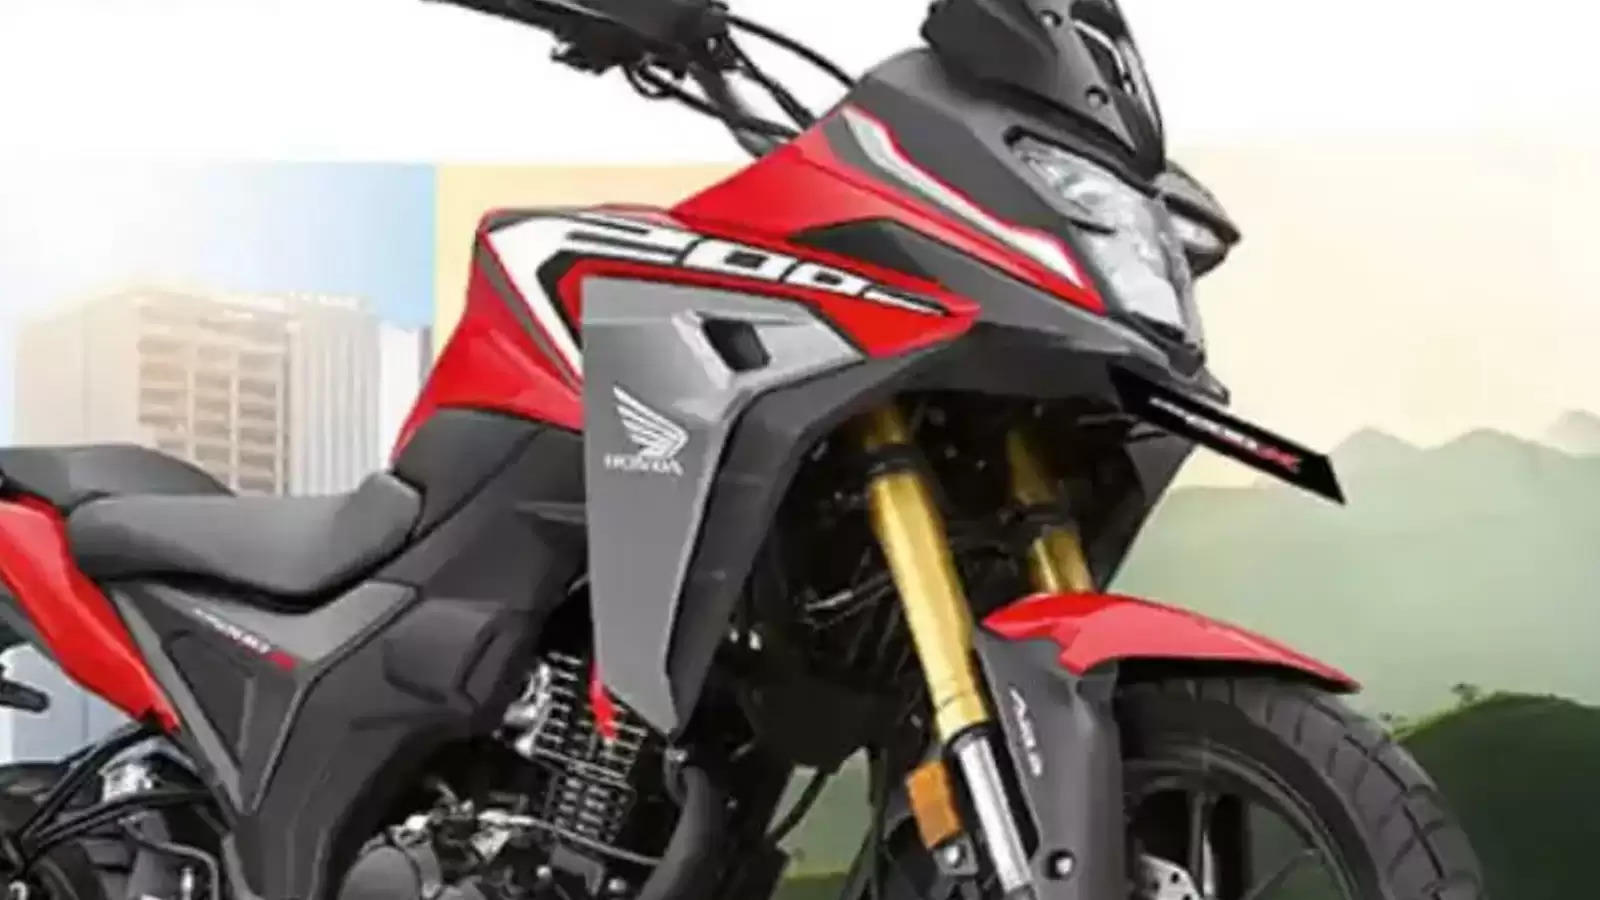 2023 Honda CB200X : Honda ने चुपके से लॉन्च कर दी अपनी नई बाइक, स्पोर्ट्स और एडवेंचर दोनों का मिलेगा पूरा मज़ा 